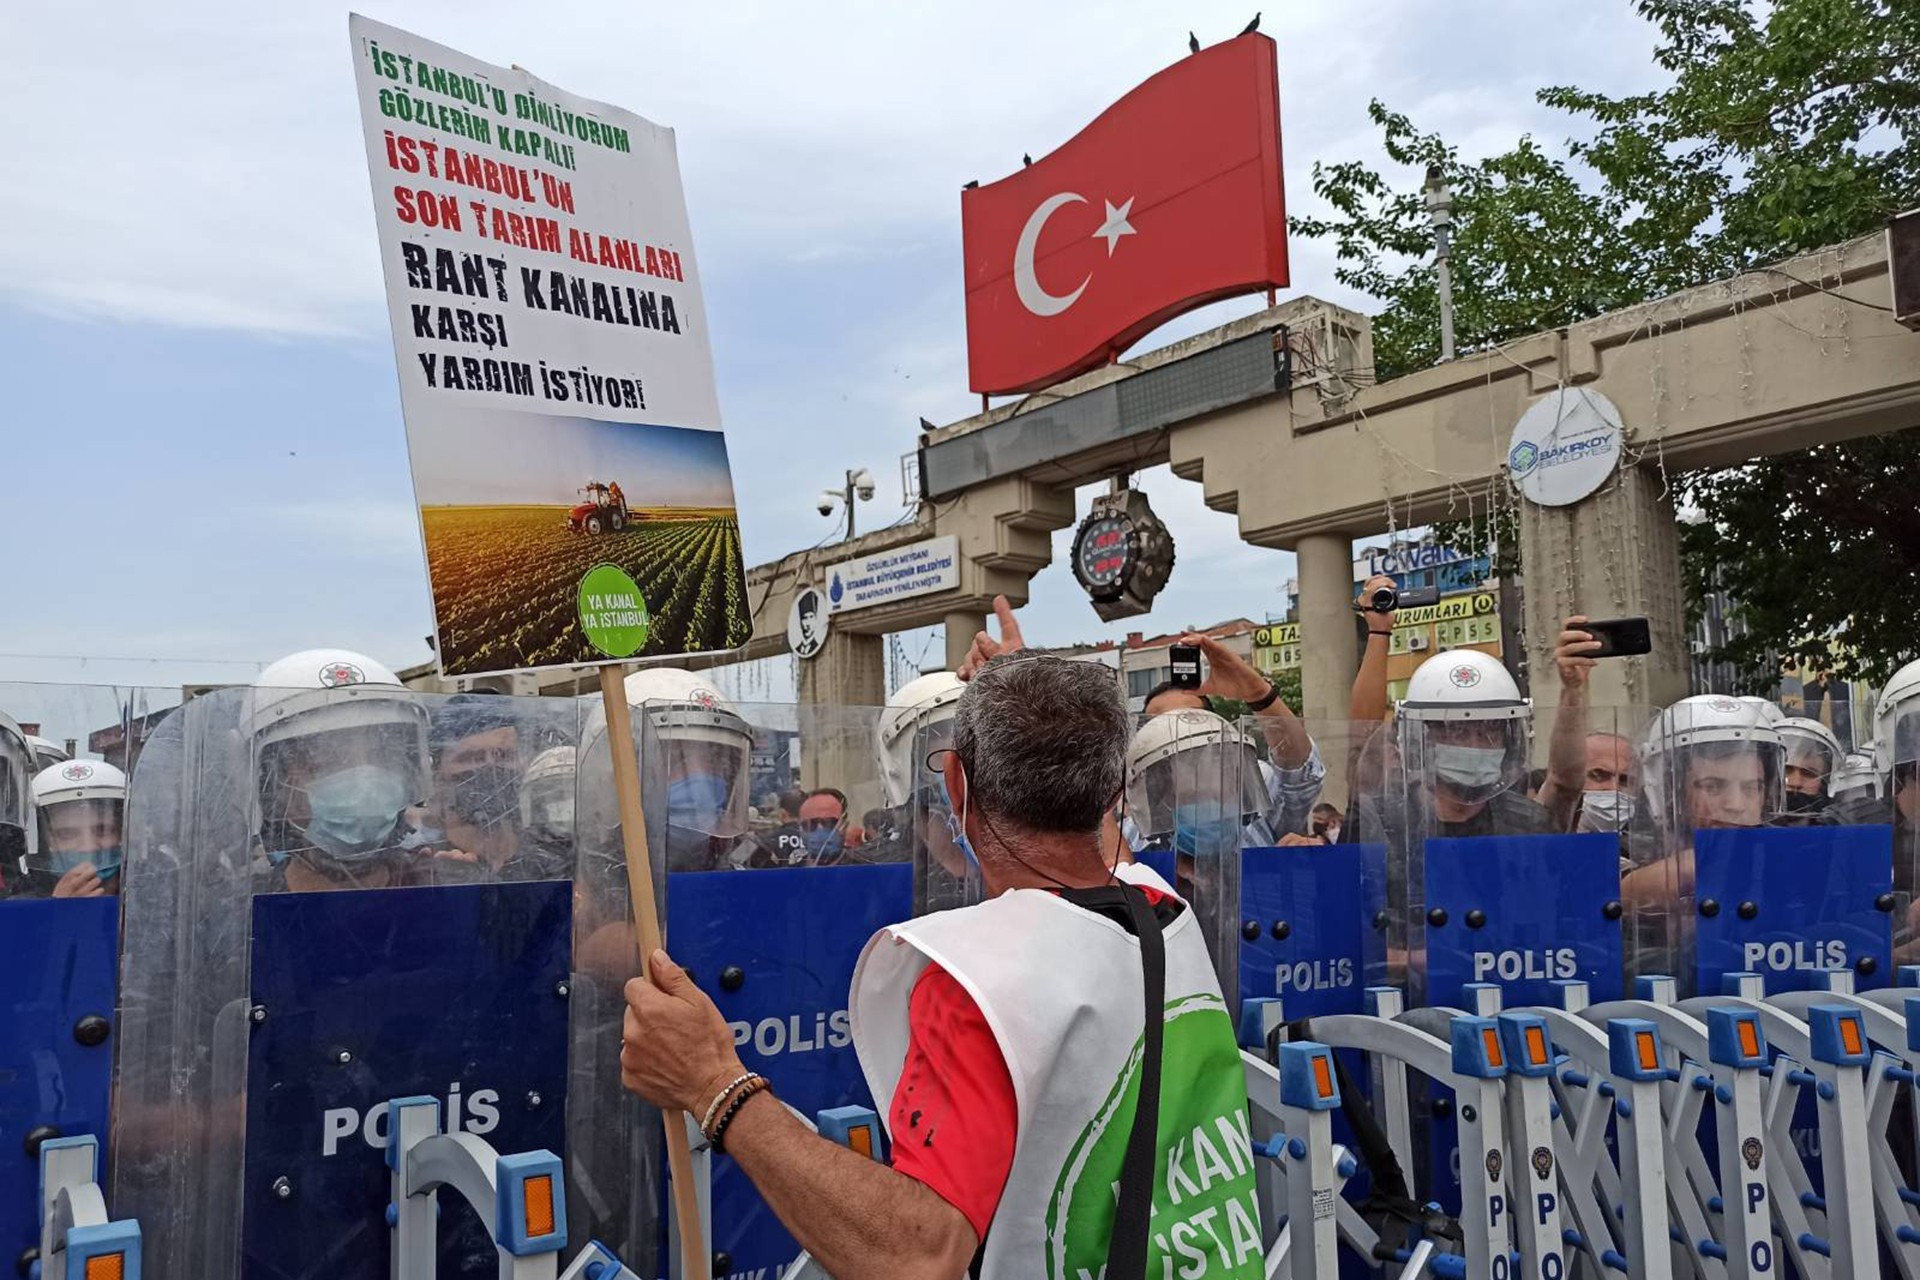 Ya Kanal Ya İstanbul koordinasyonu, Bakırköy Özgürlük Meydanı'nda gerçekleştirilen eylemde 'Kanal'ı yaptırmayacağız' dedi.